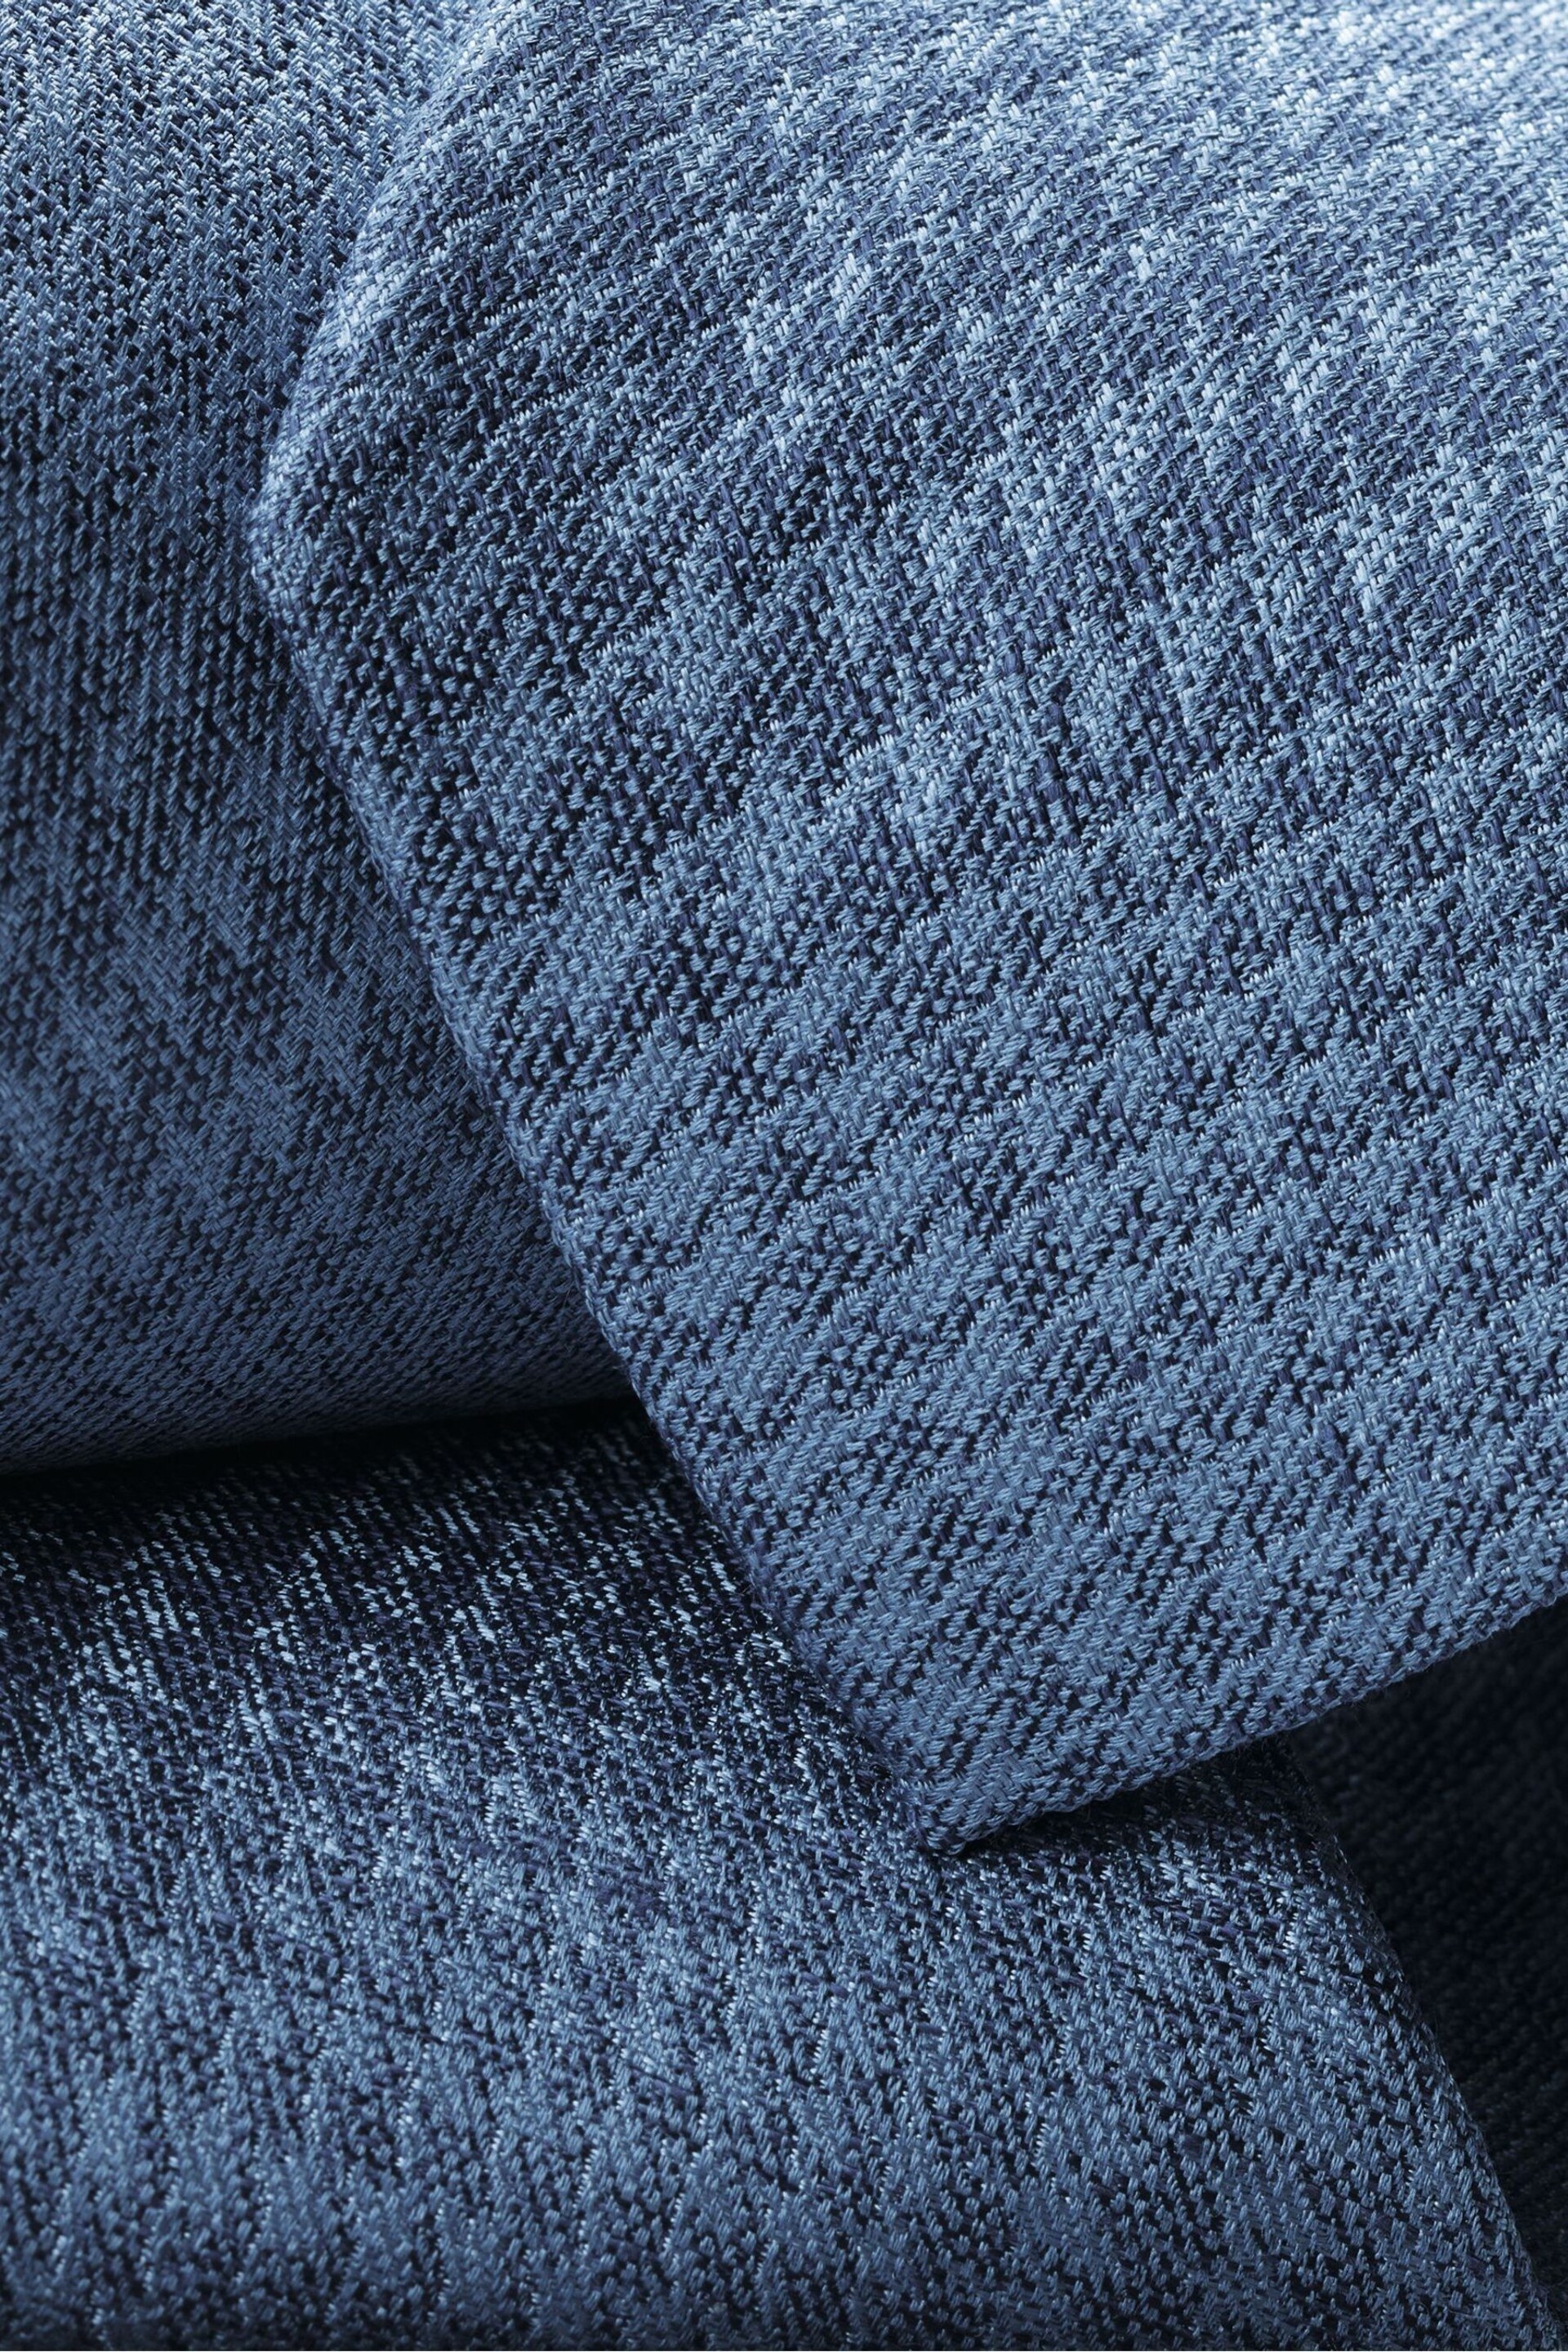 Charles Tyrwhitt Blue Silk Linen Tie - Image 2 of 2